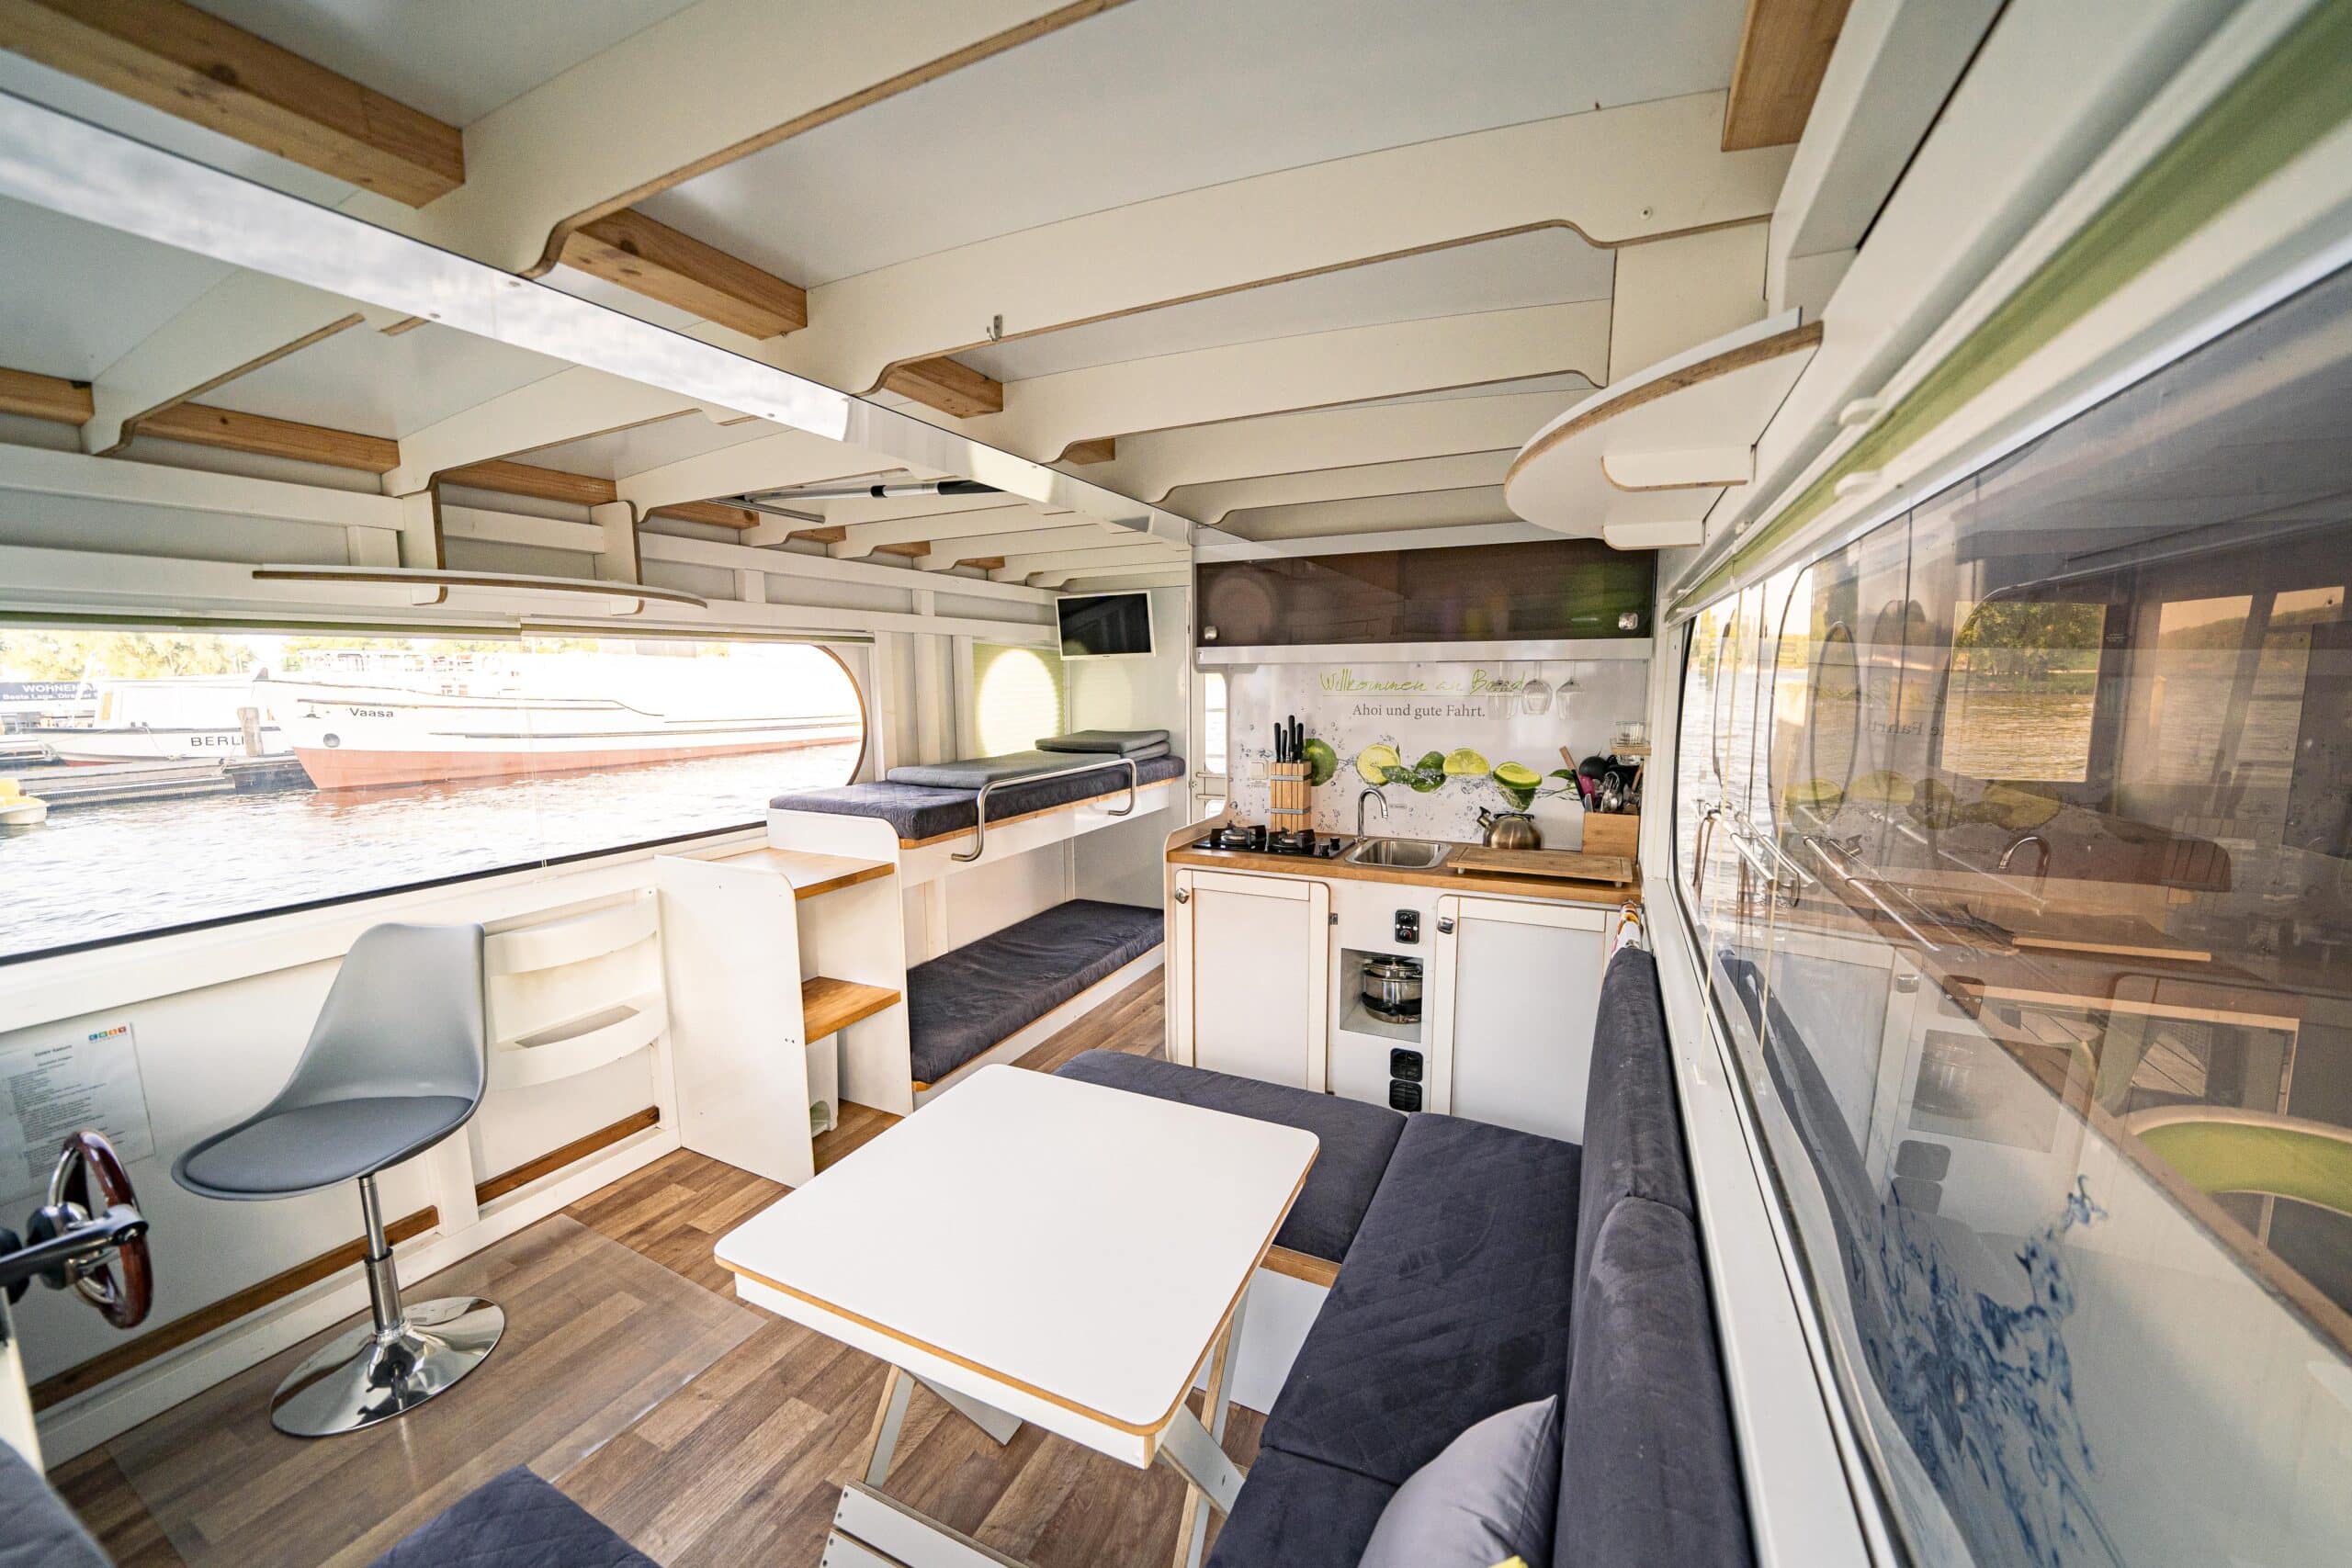 Adonis, COSY Hausboote, Innenraum ausgestattet mit Sofa, Tisch, Küche und Bettliegen